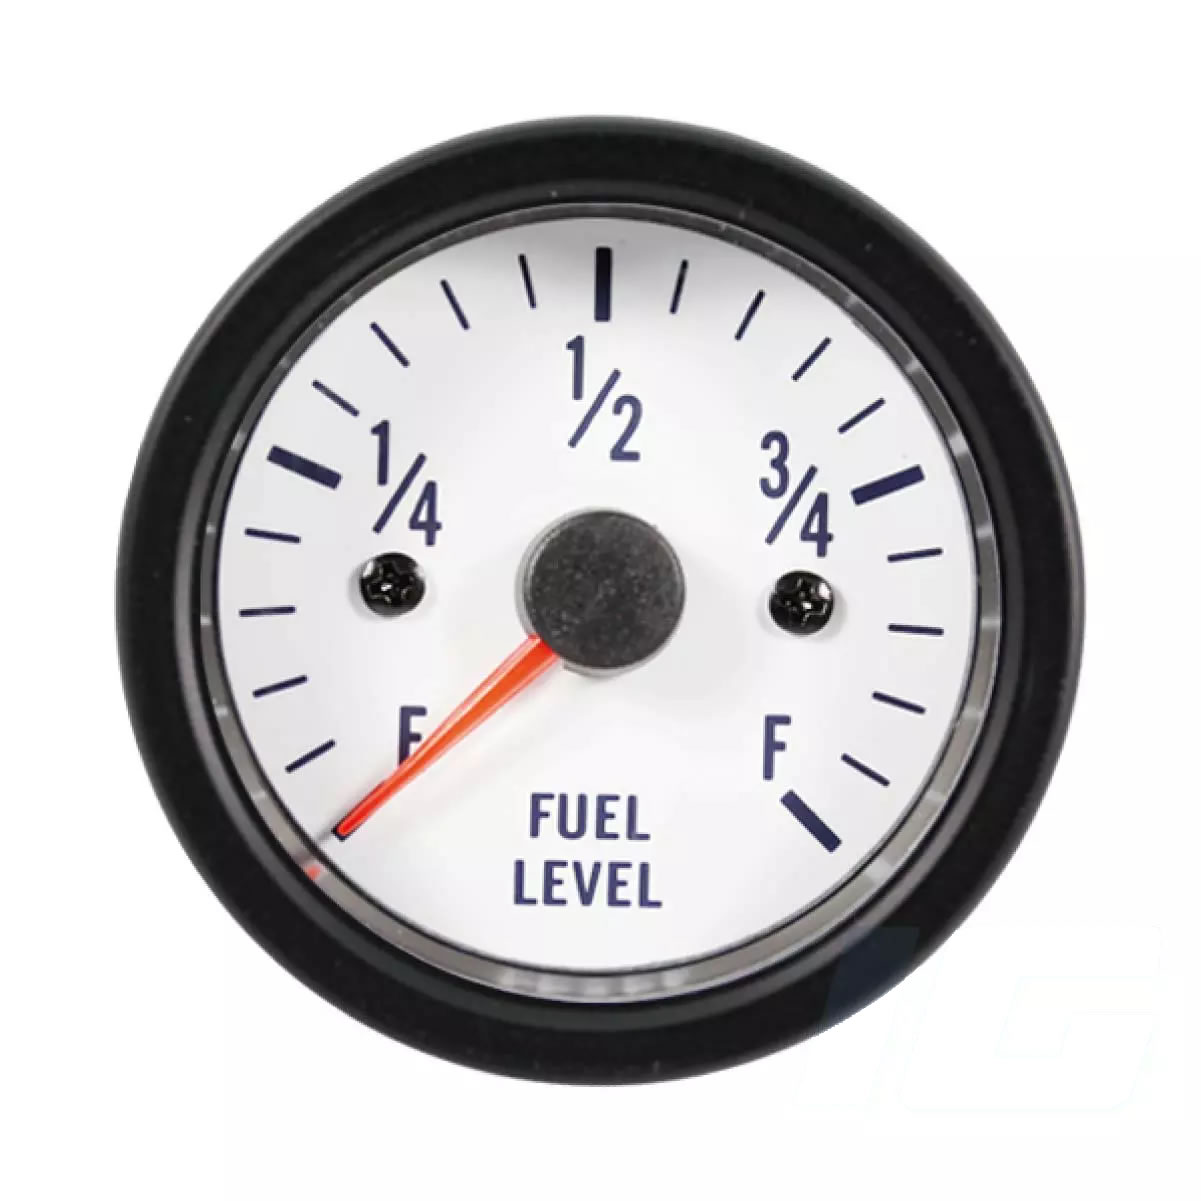 Fuel Level Gauges for trucks